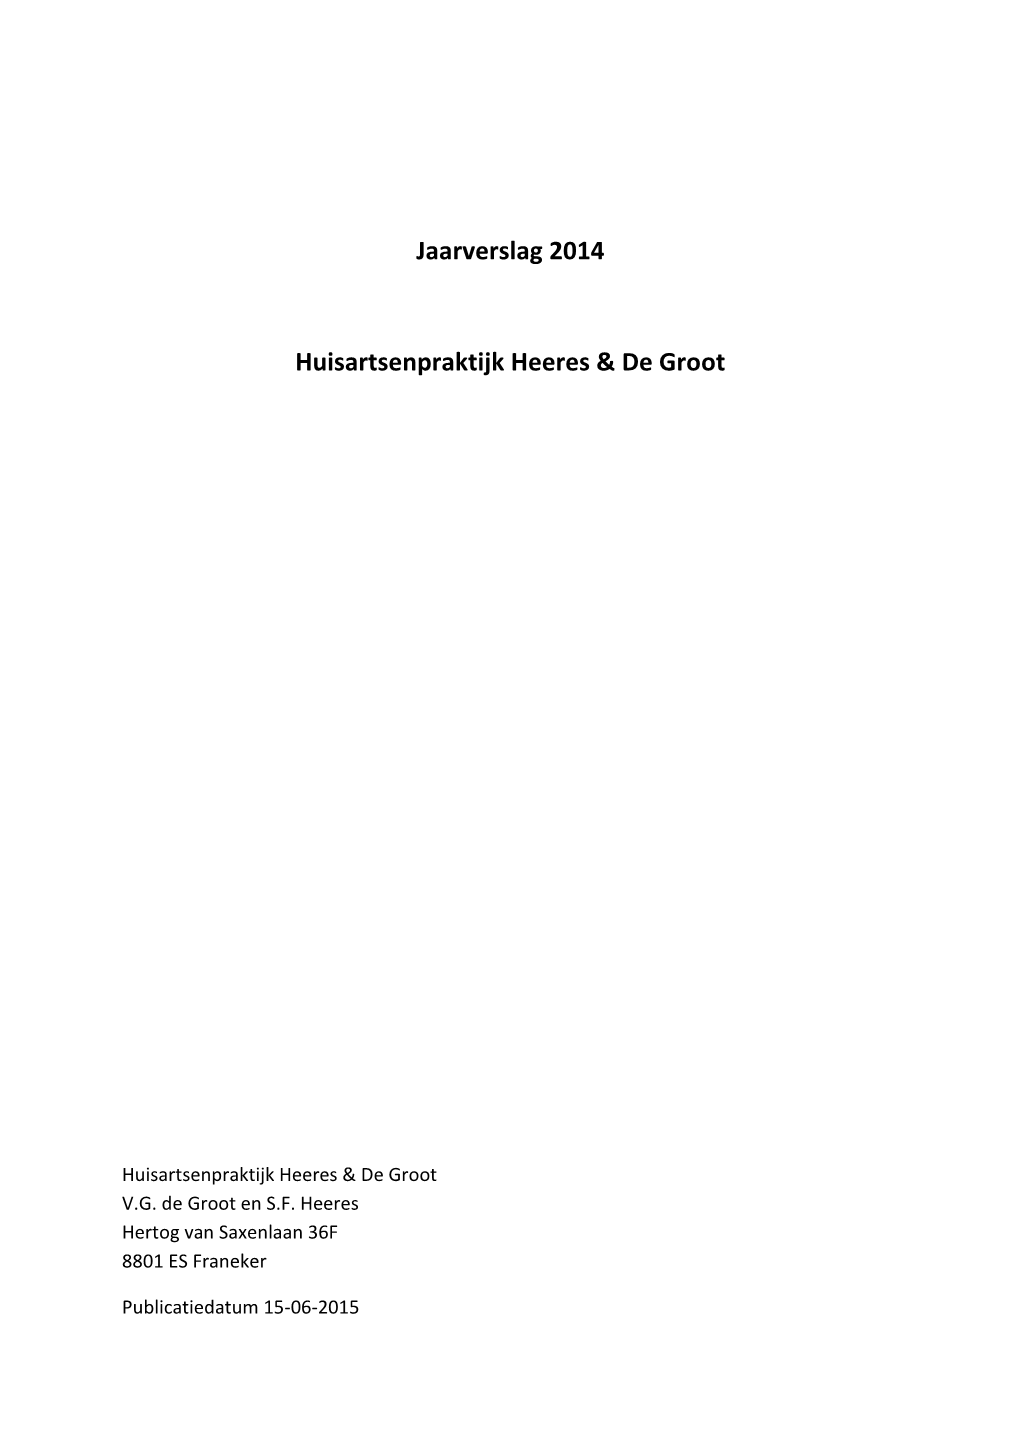 Jaarverslag 2014 Huisartsenpraktijk Heeres & De Groot